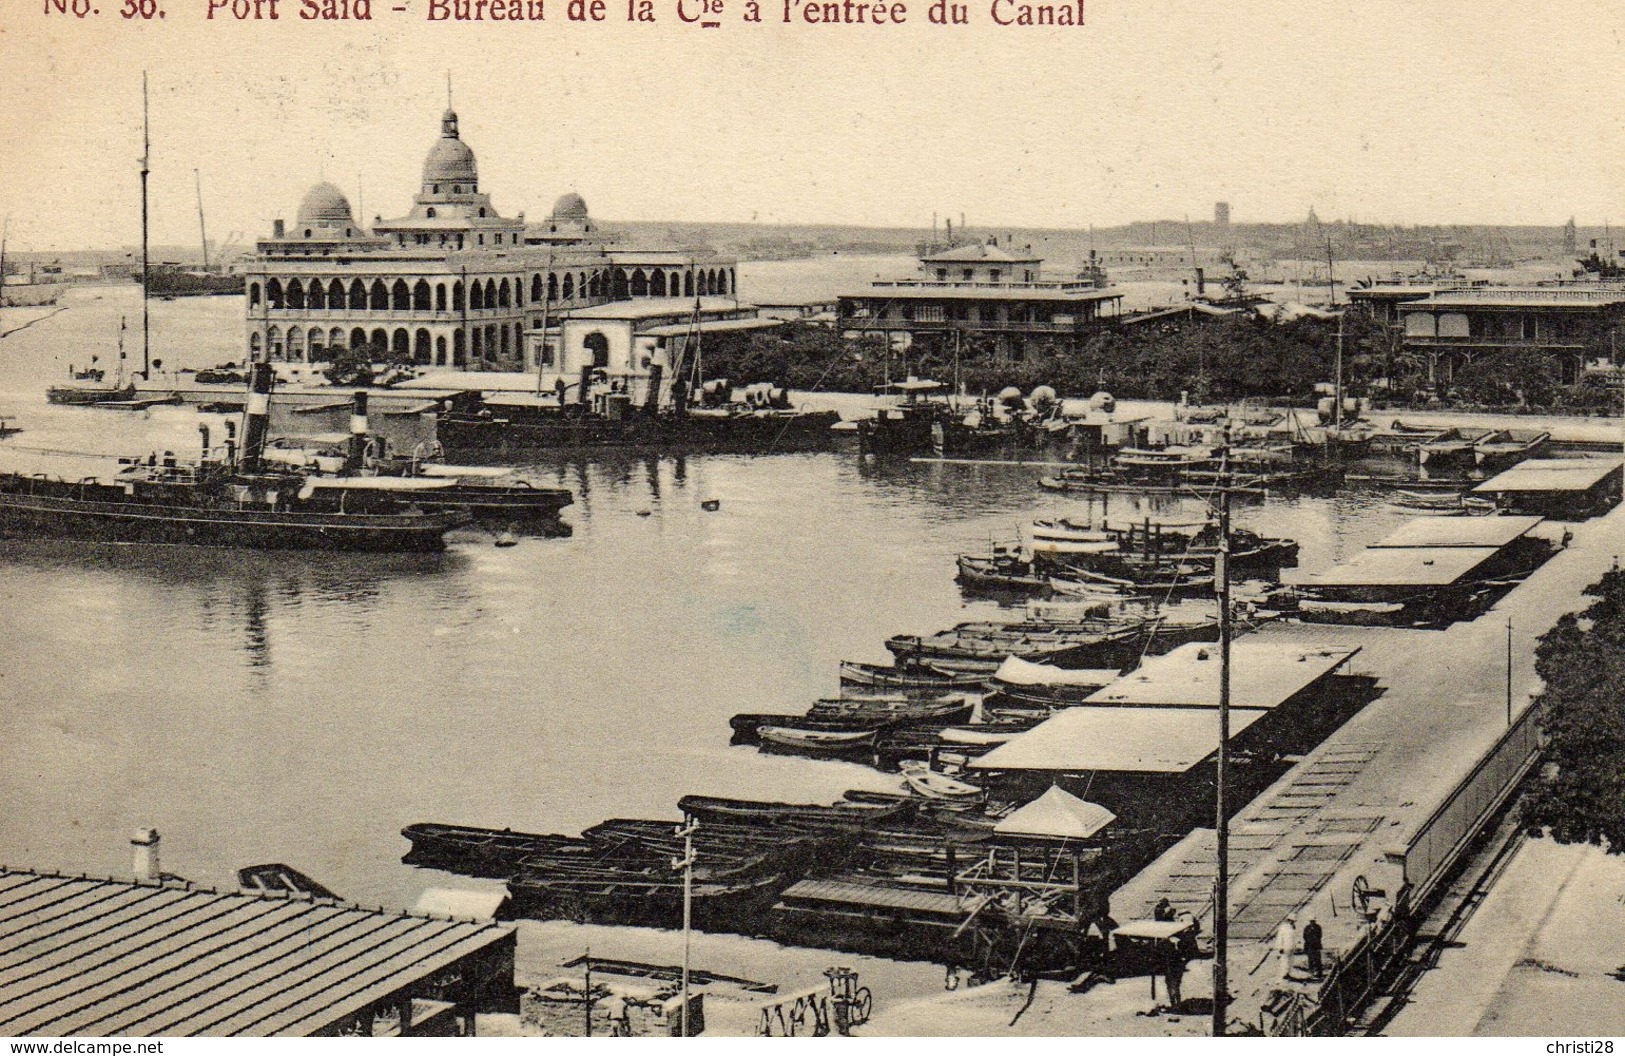 EGYPTE PORT-SAID Bureau De La Cie à L'entrée Du Canal - Port Said